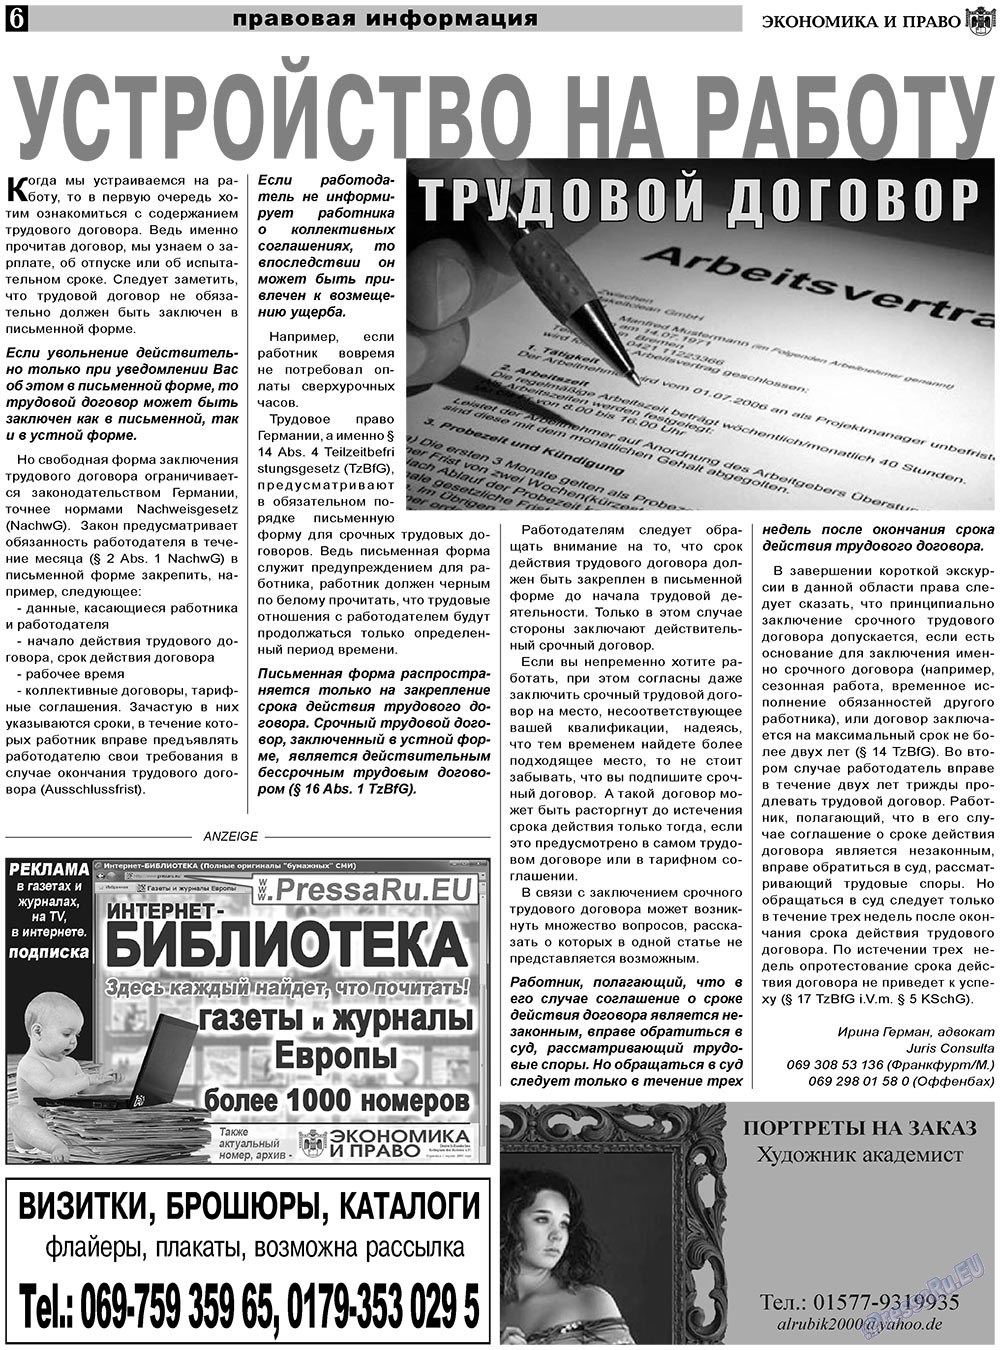 Экономика и право (газета). 2011 год, номер 5, стр. 6